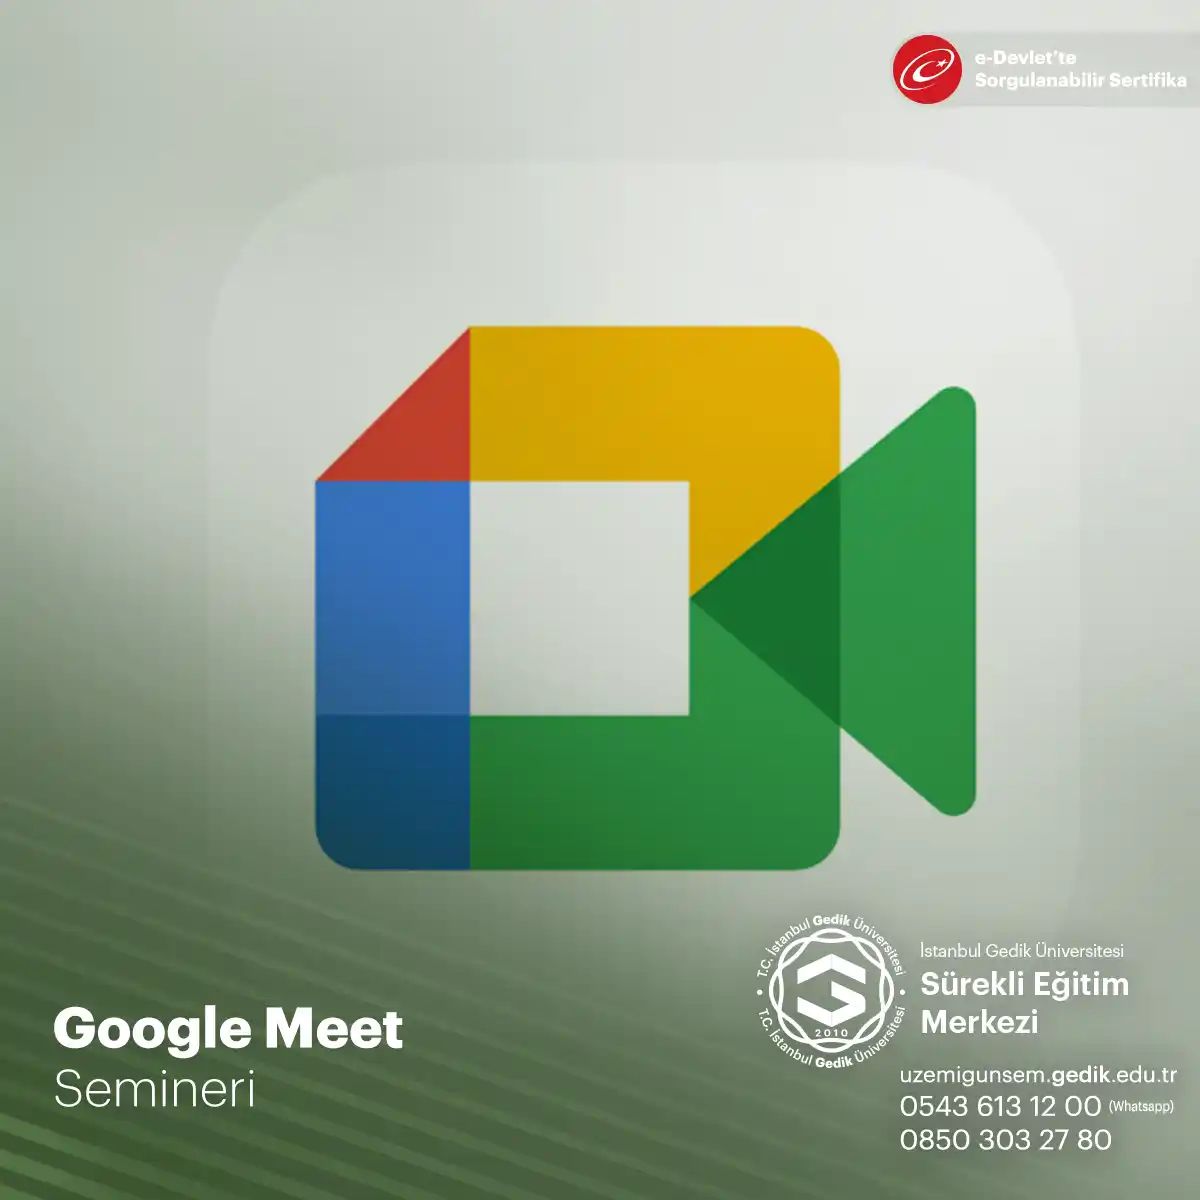 Google Meet Seminer Programı